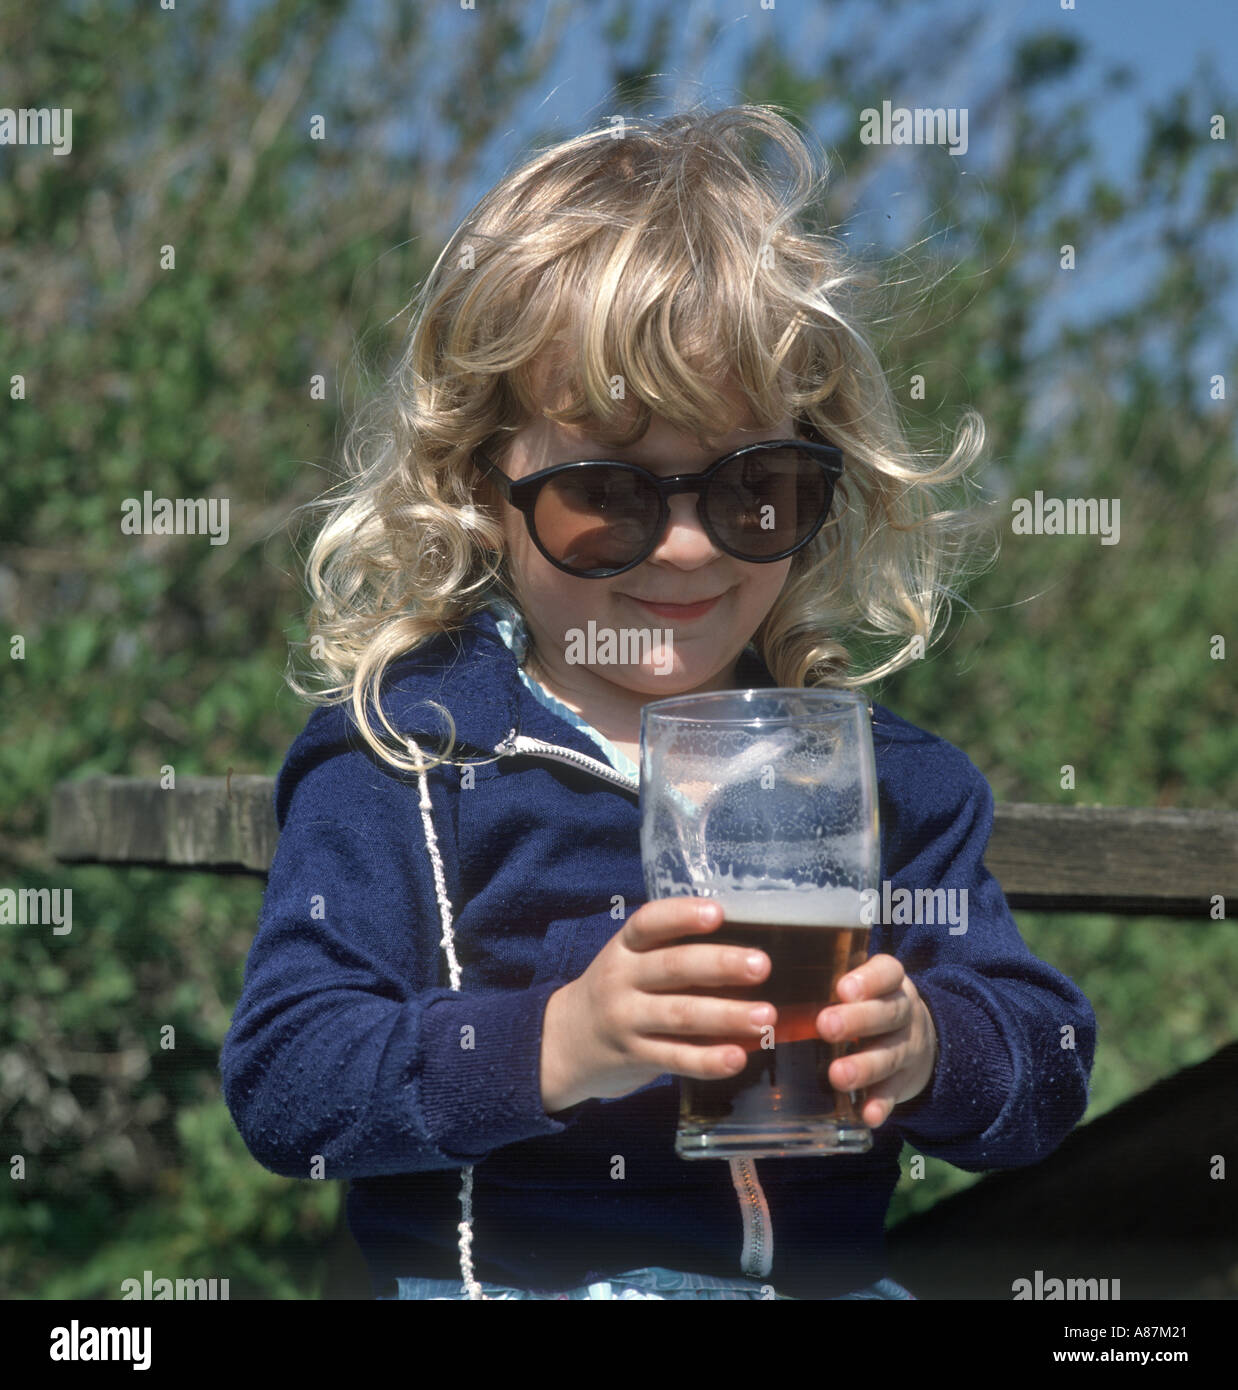 Kleines Mädchen versucht, trinken Sie einen Pint Bier und tragen übergroße Sonnenbrille, England, Vereinigtes Königreich Stockfoto